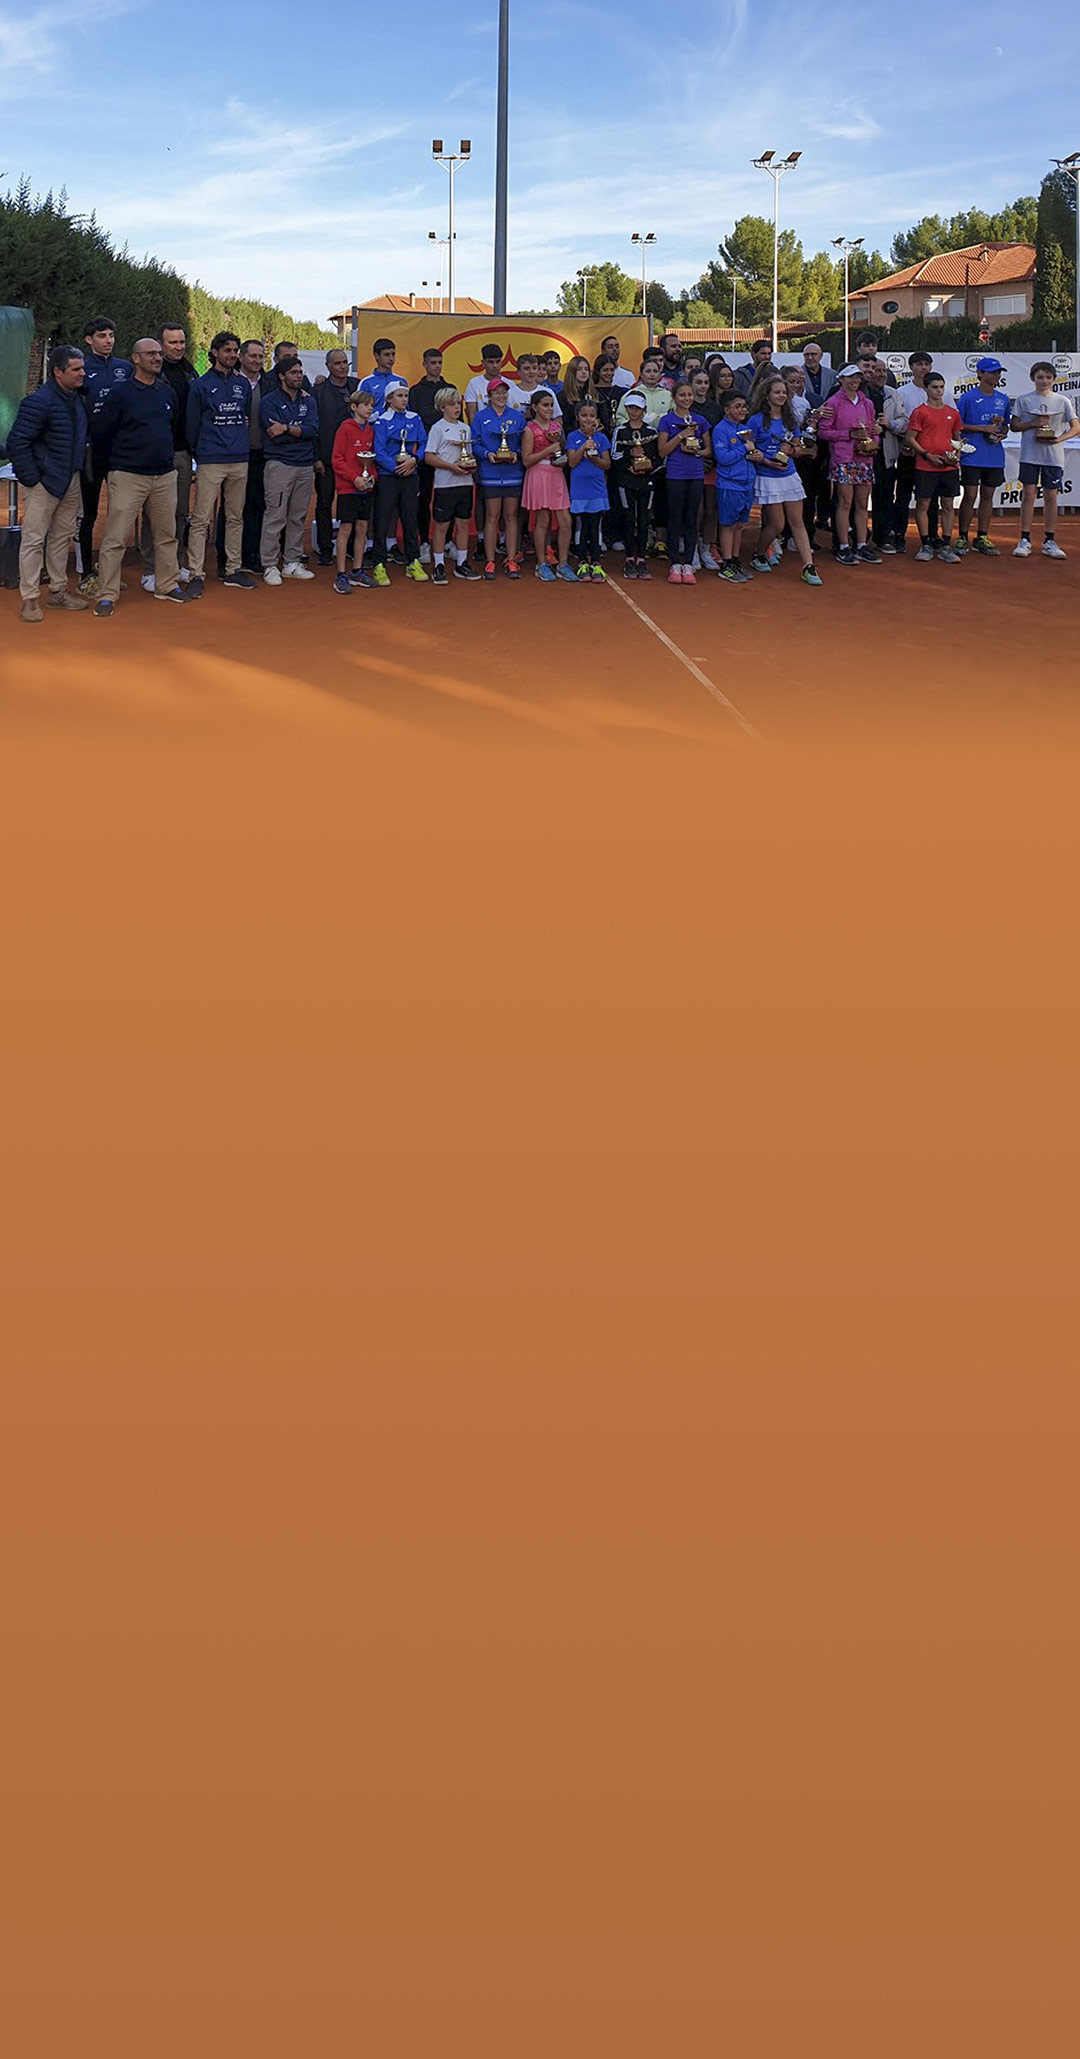 El Torneo Nacional de Tenis Postres Reina vuelve a batir su récord de participación